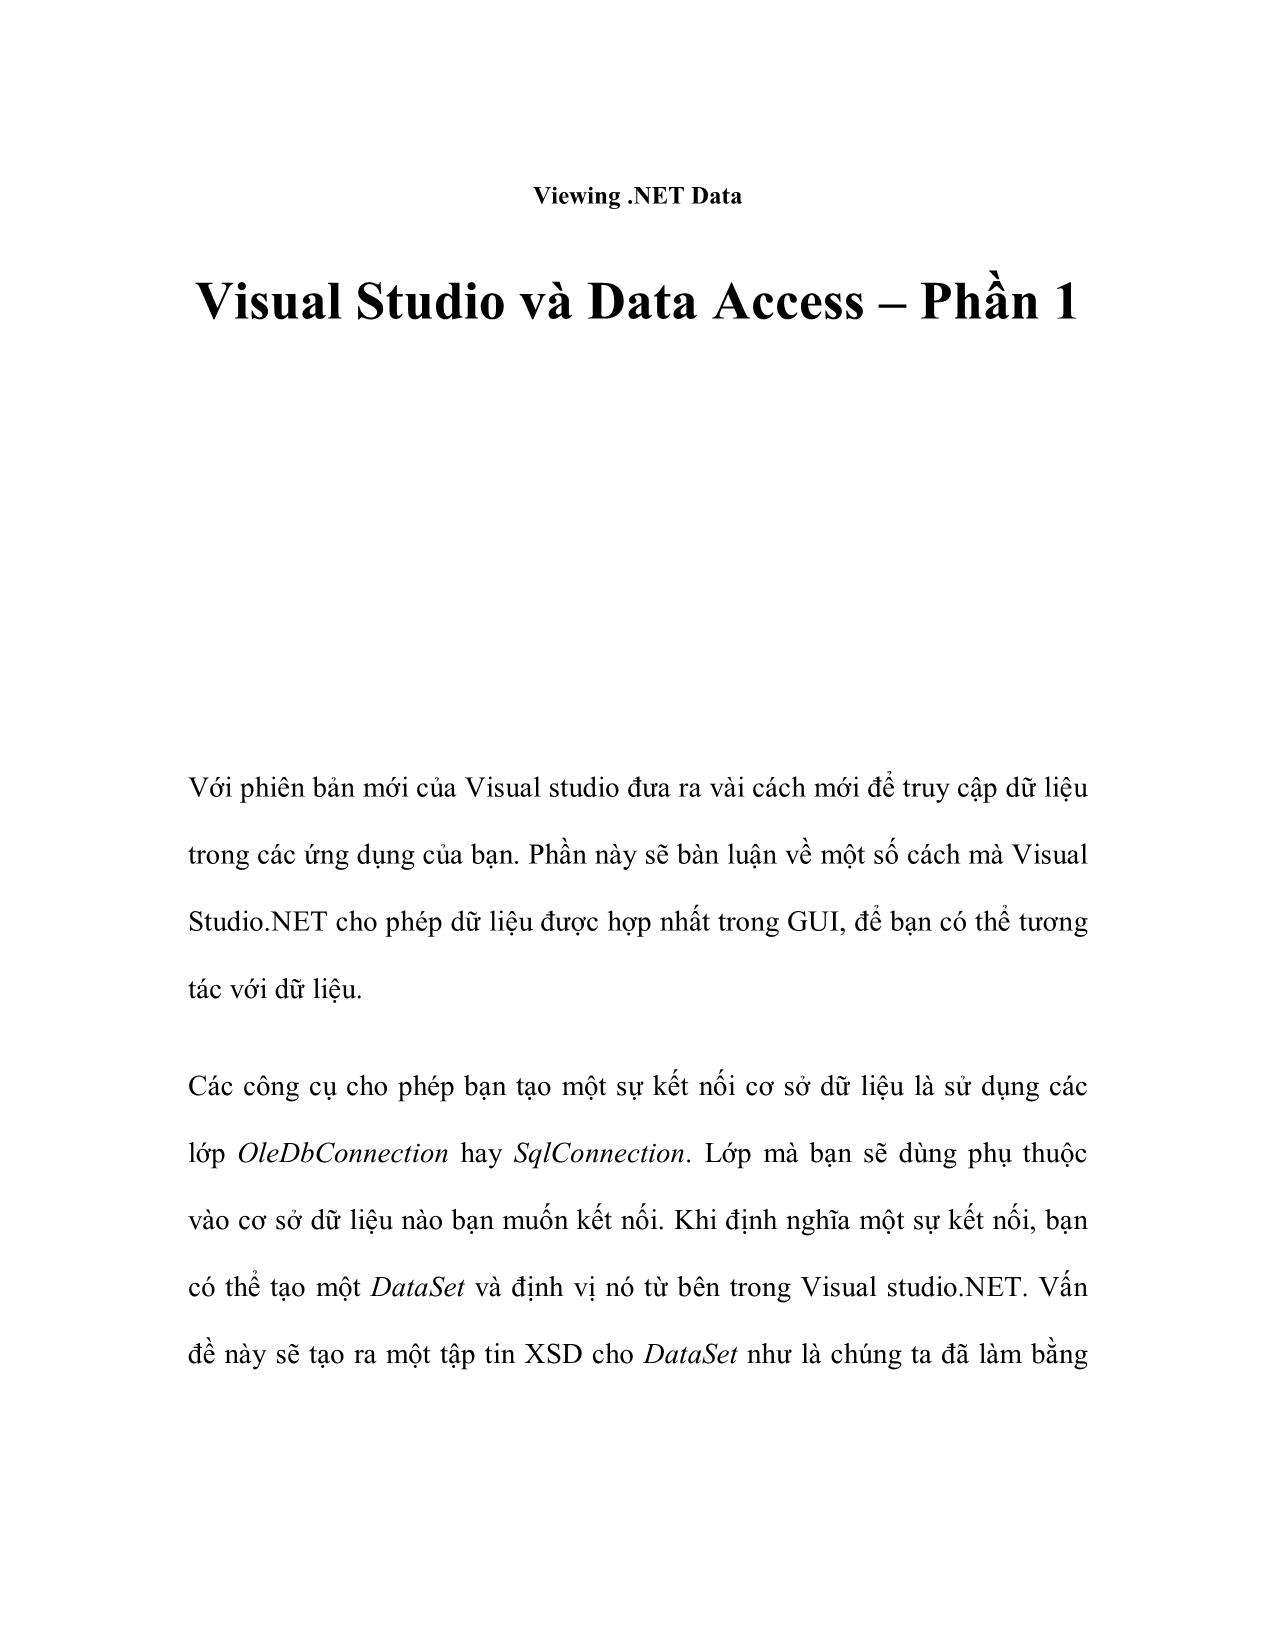 Visual Studio và Data Access – Phần 1 trang 1